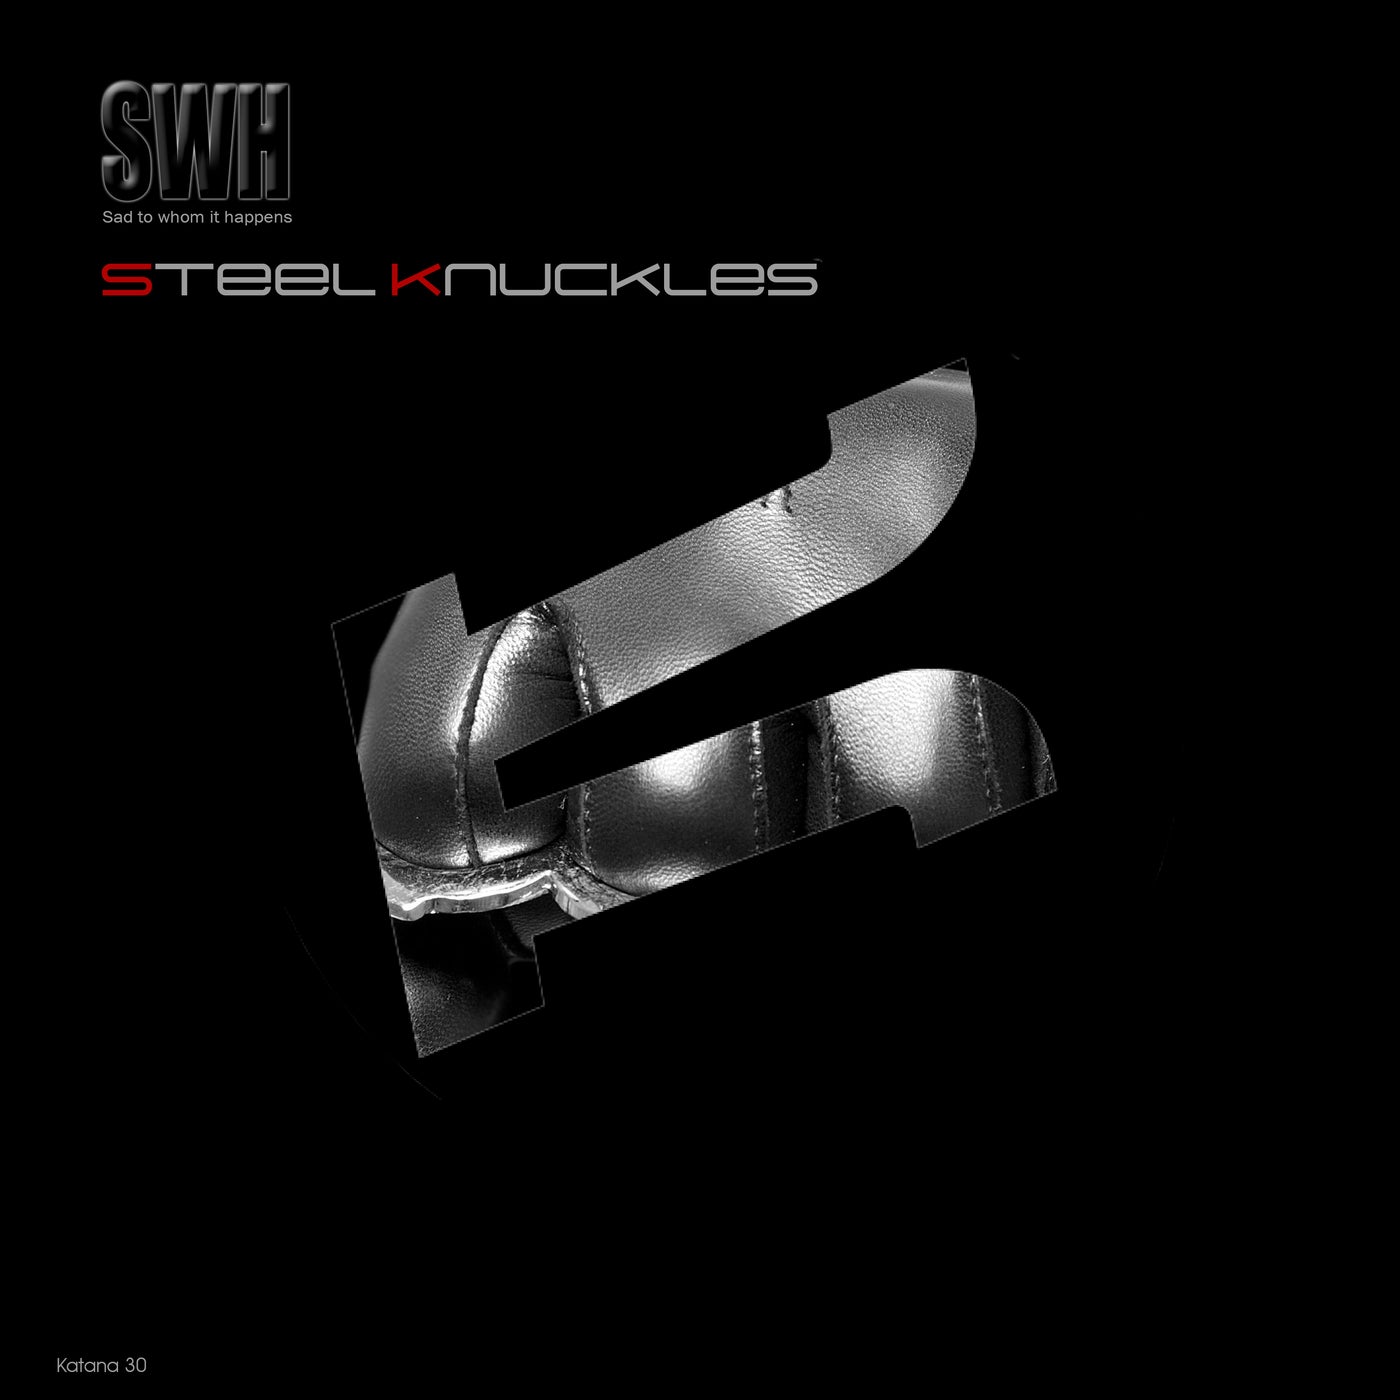 Steel Knuckles